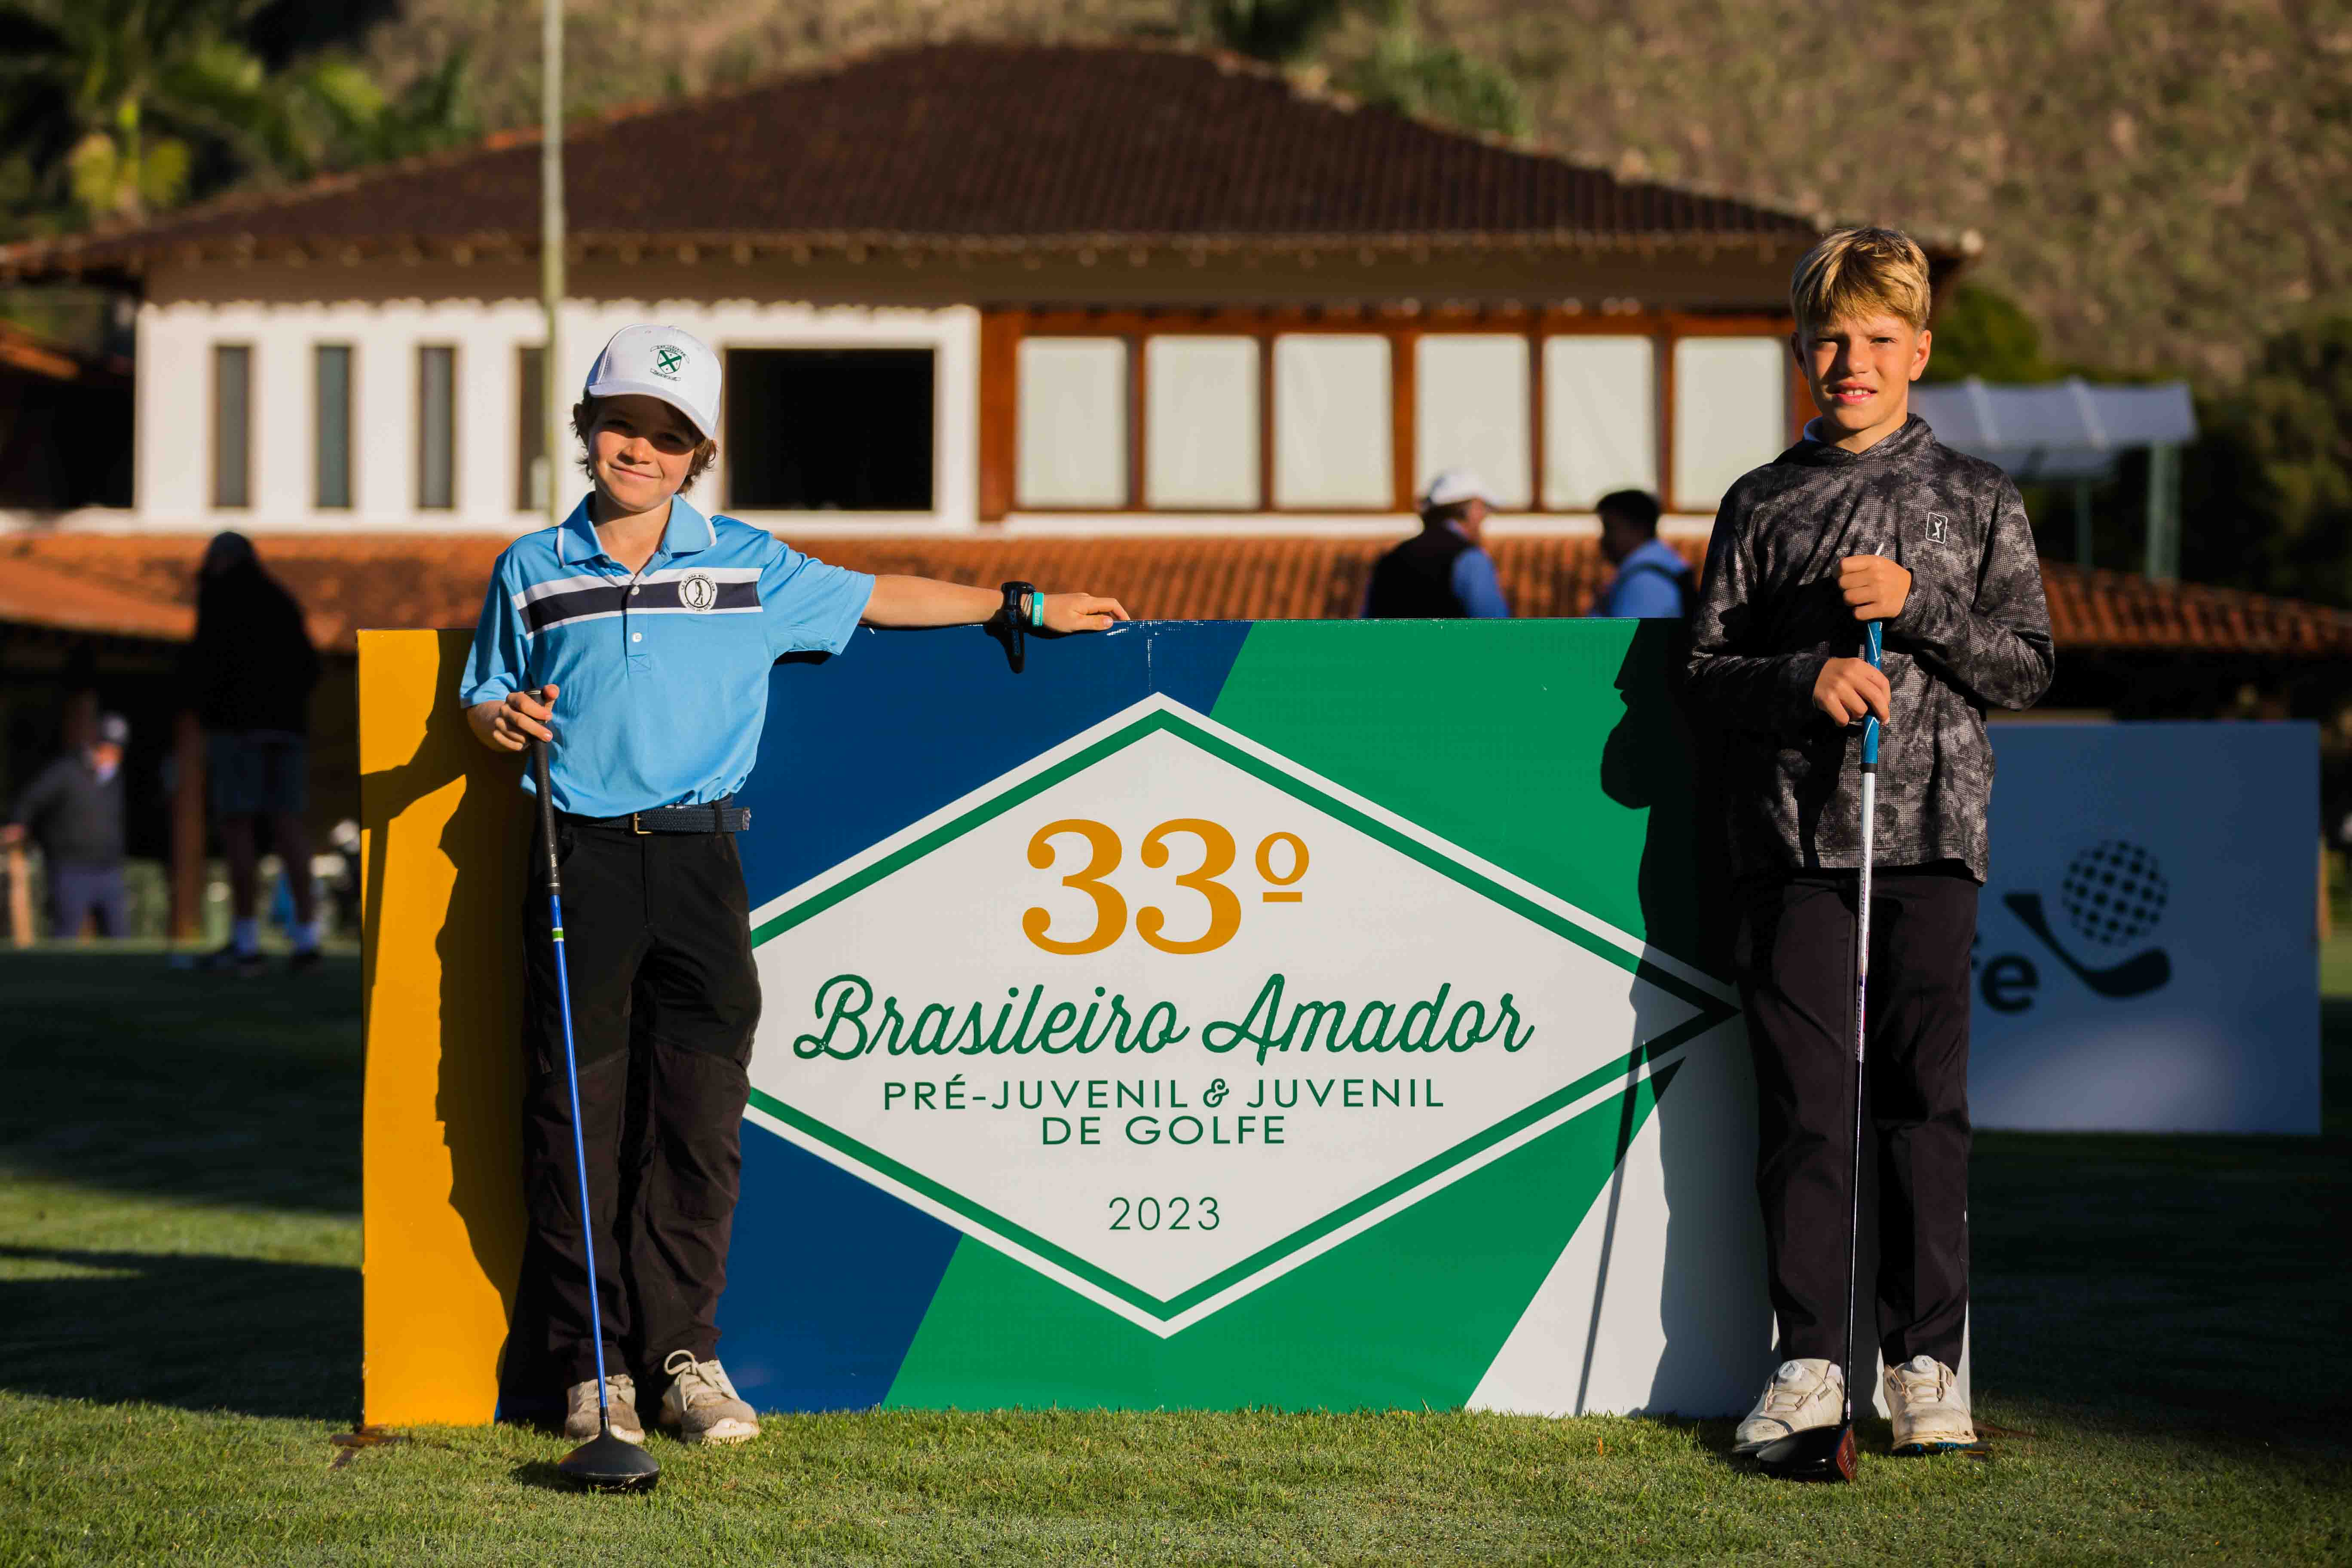 33º Campeonato Brasileiro Amador Pré-Juvenil e Juvenil - 2 Dia do Torneio